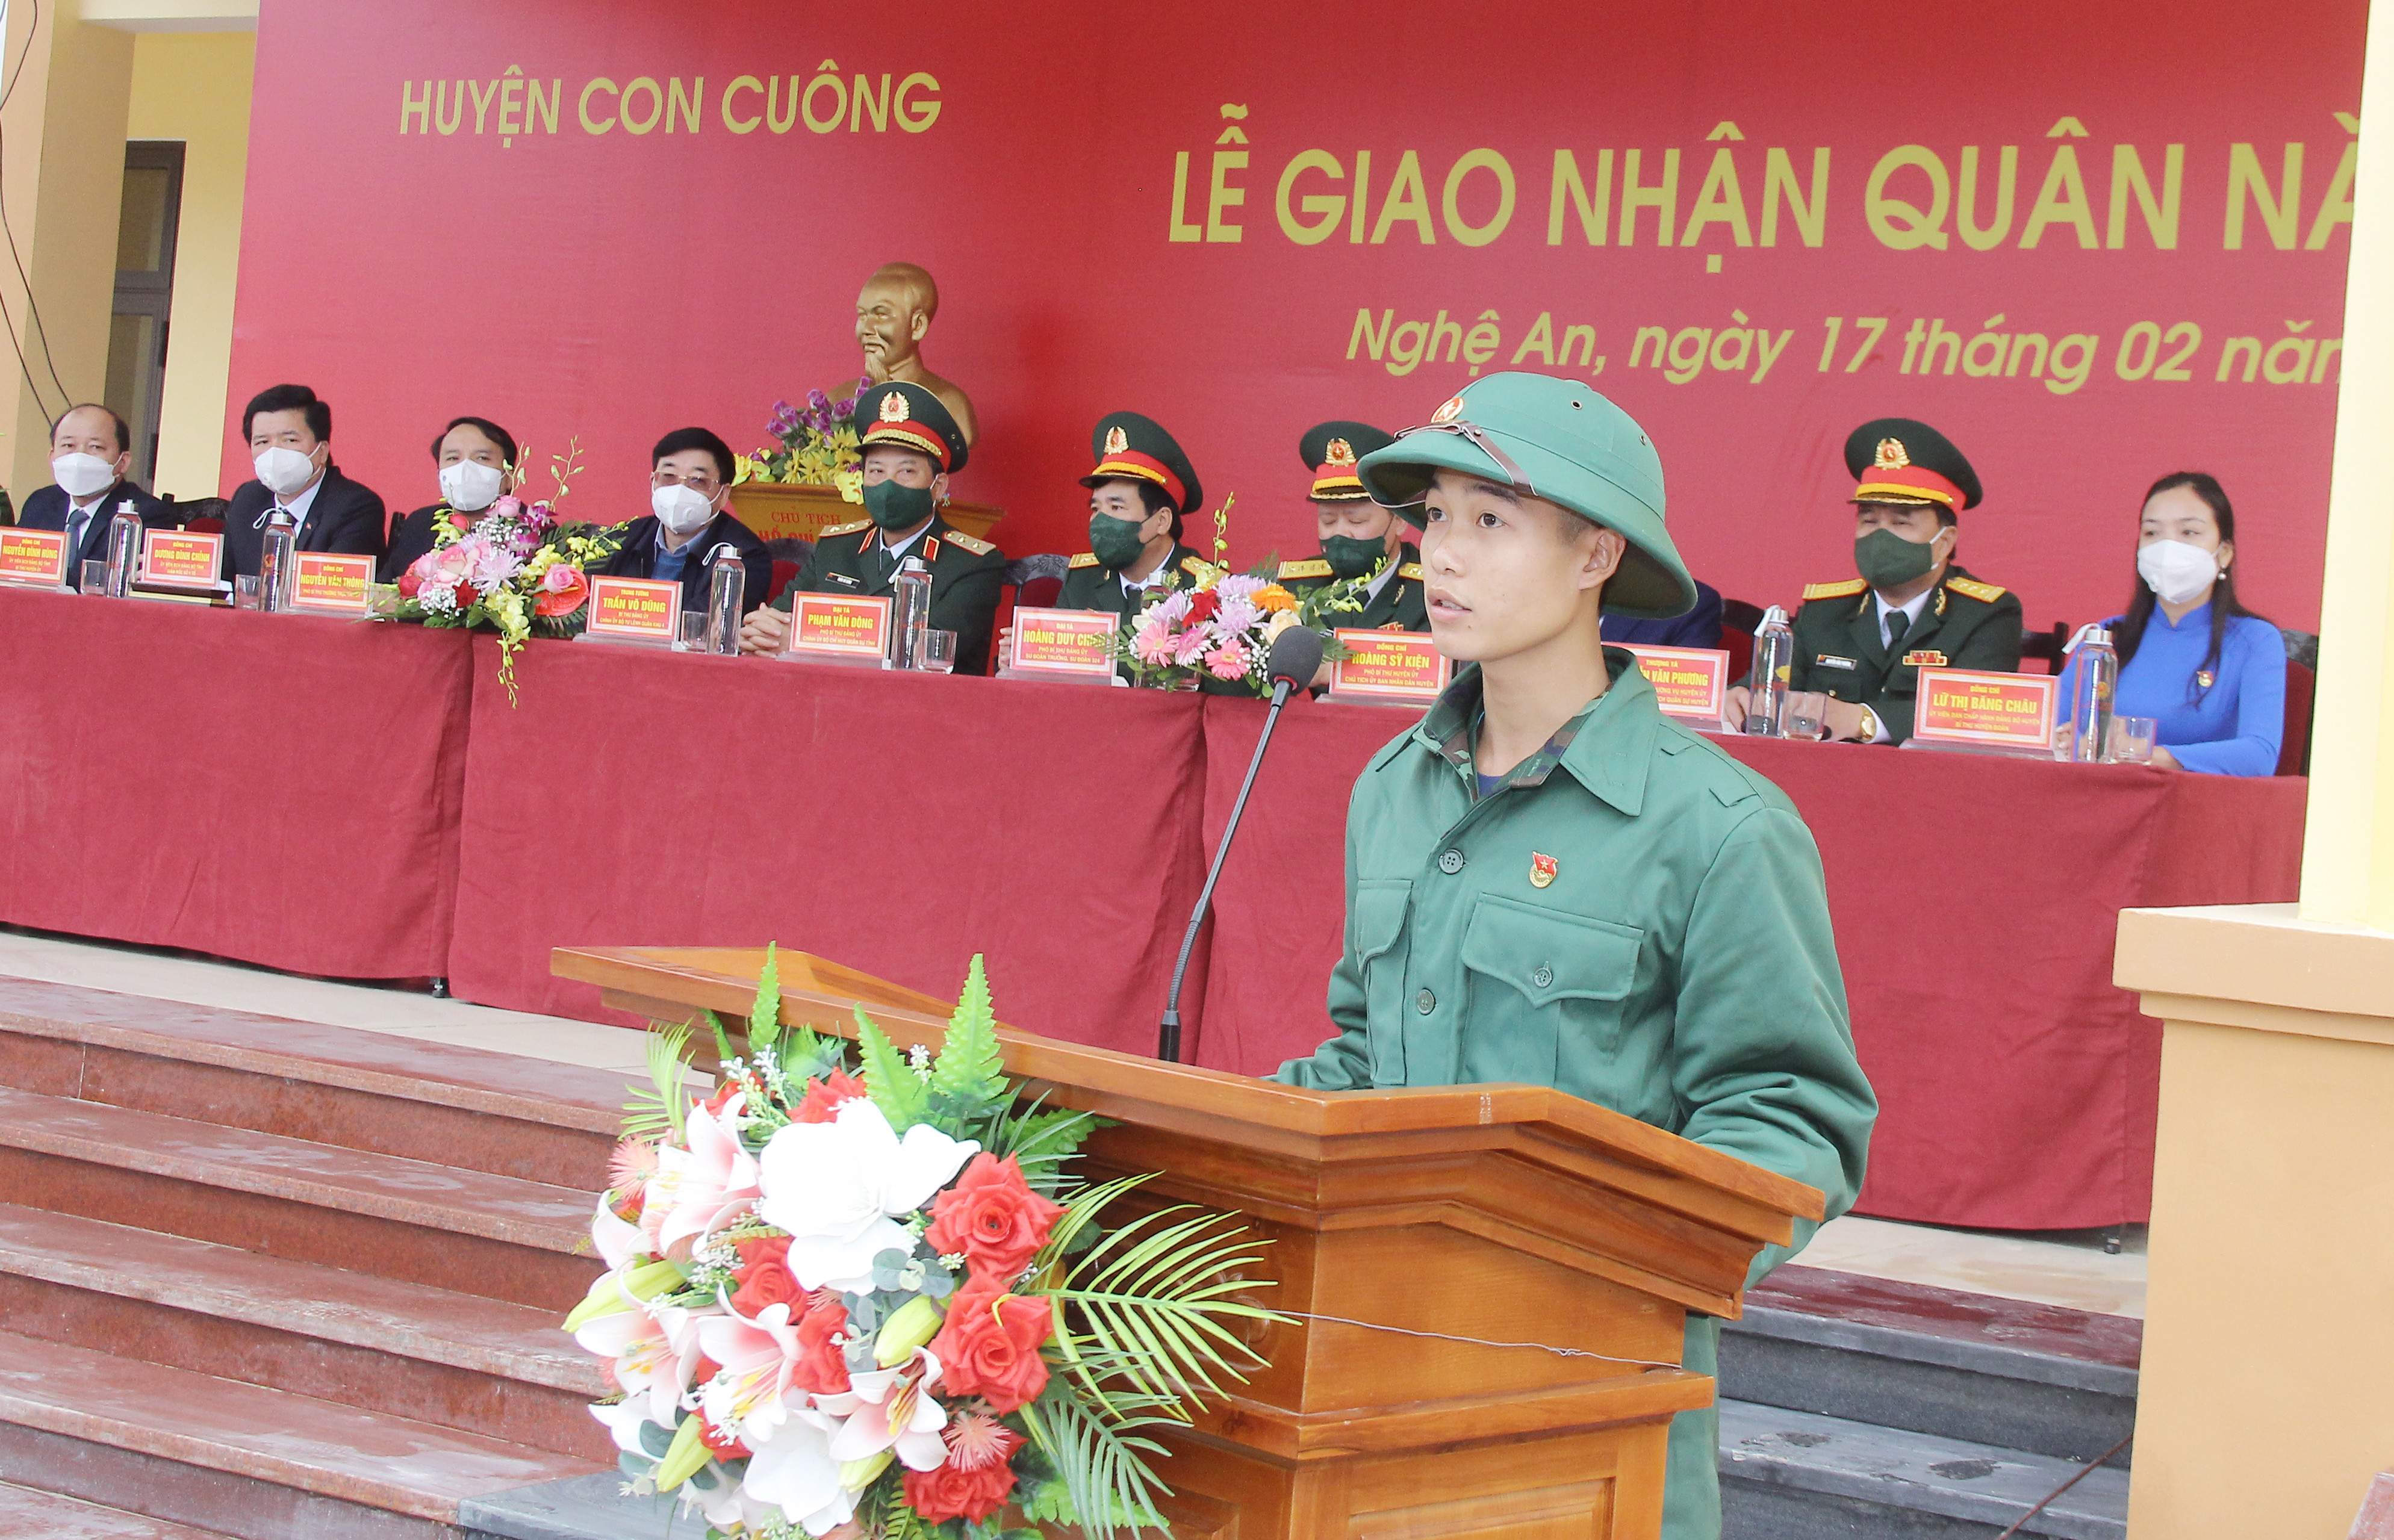 ông dân Nguyễn Hữu Đắc phát biểu tại lễ giao, nhận quân. Ảnh: Mai Hoa